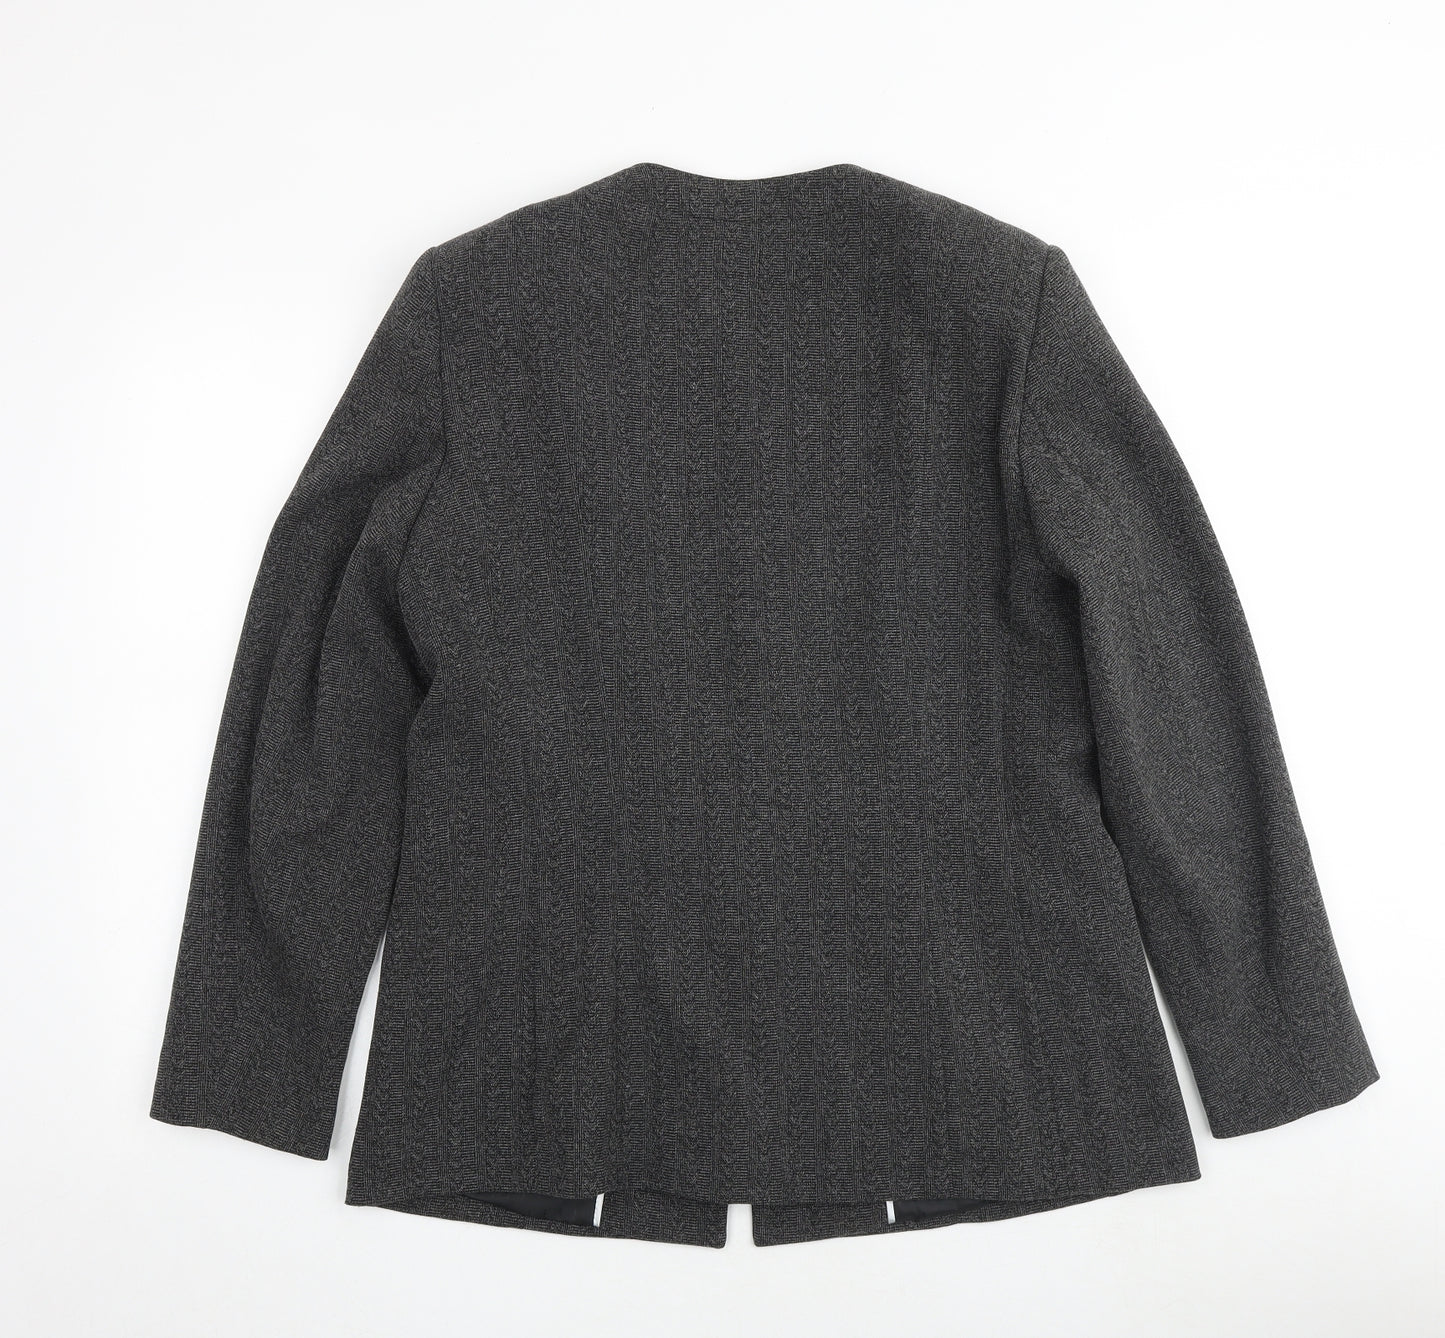 Klass Womens Grey Geometric Jacket Blazer Size 14 Button